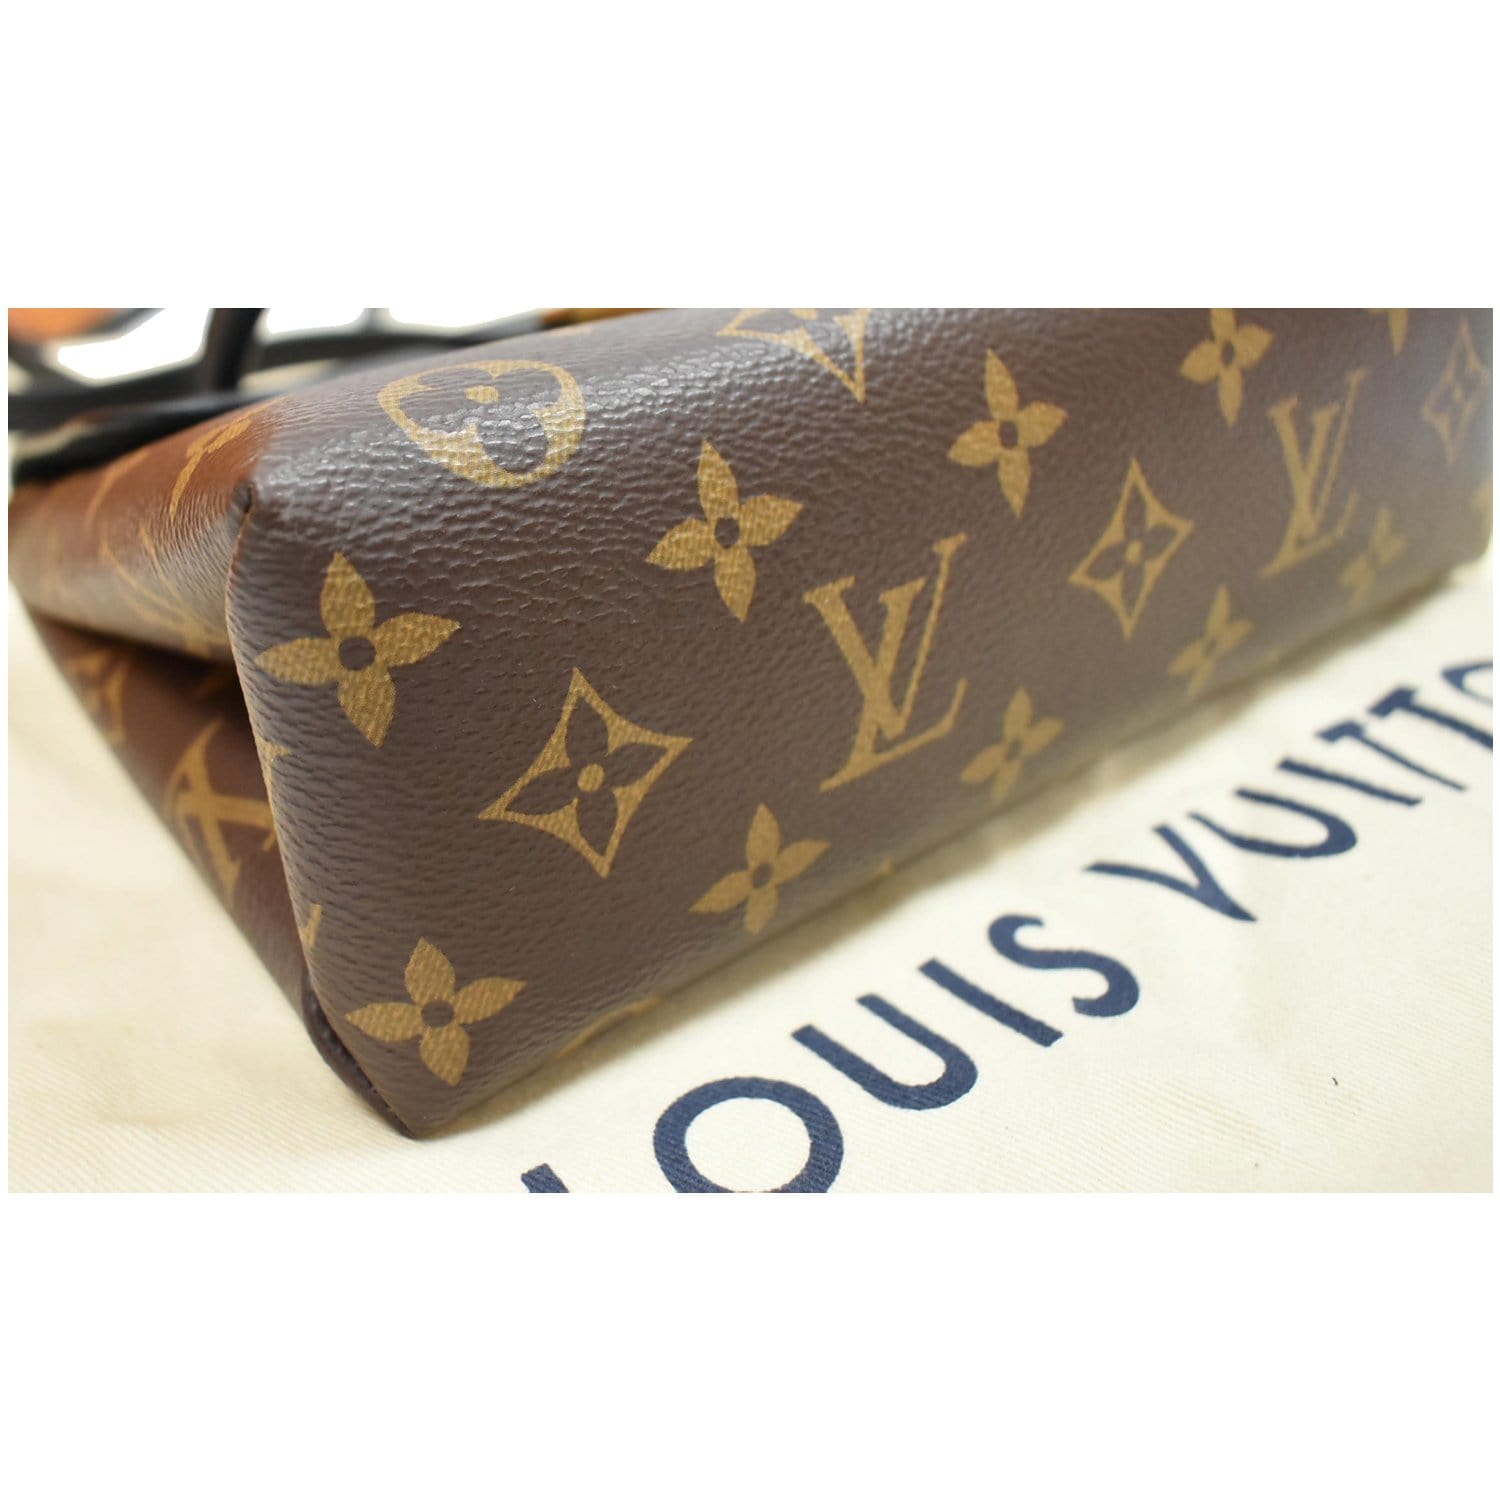 Louis Vuitton Locky BB Tote Bag - Farfetch